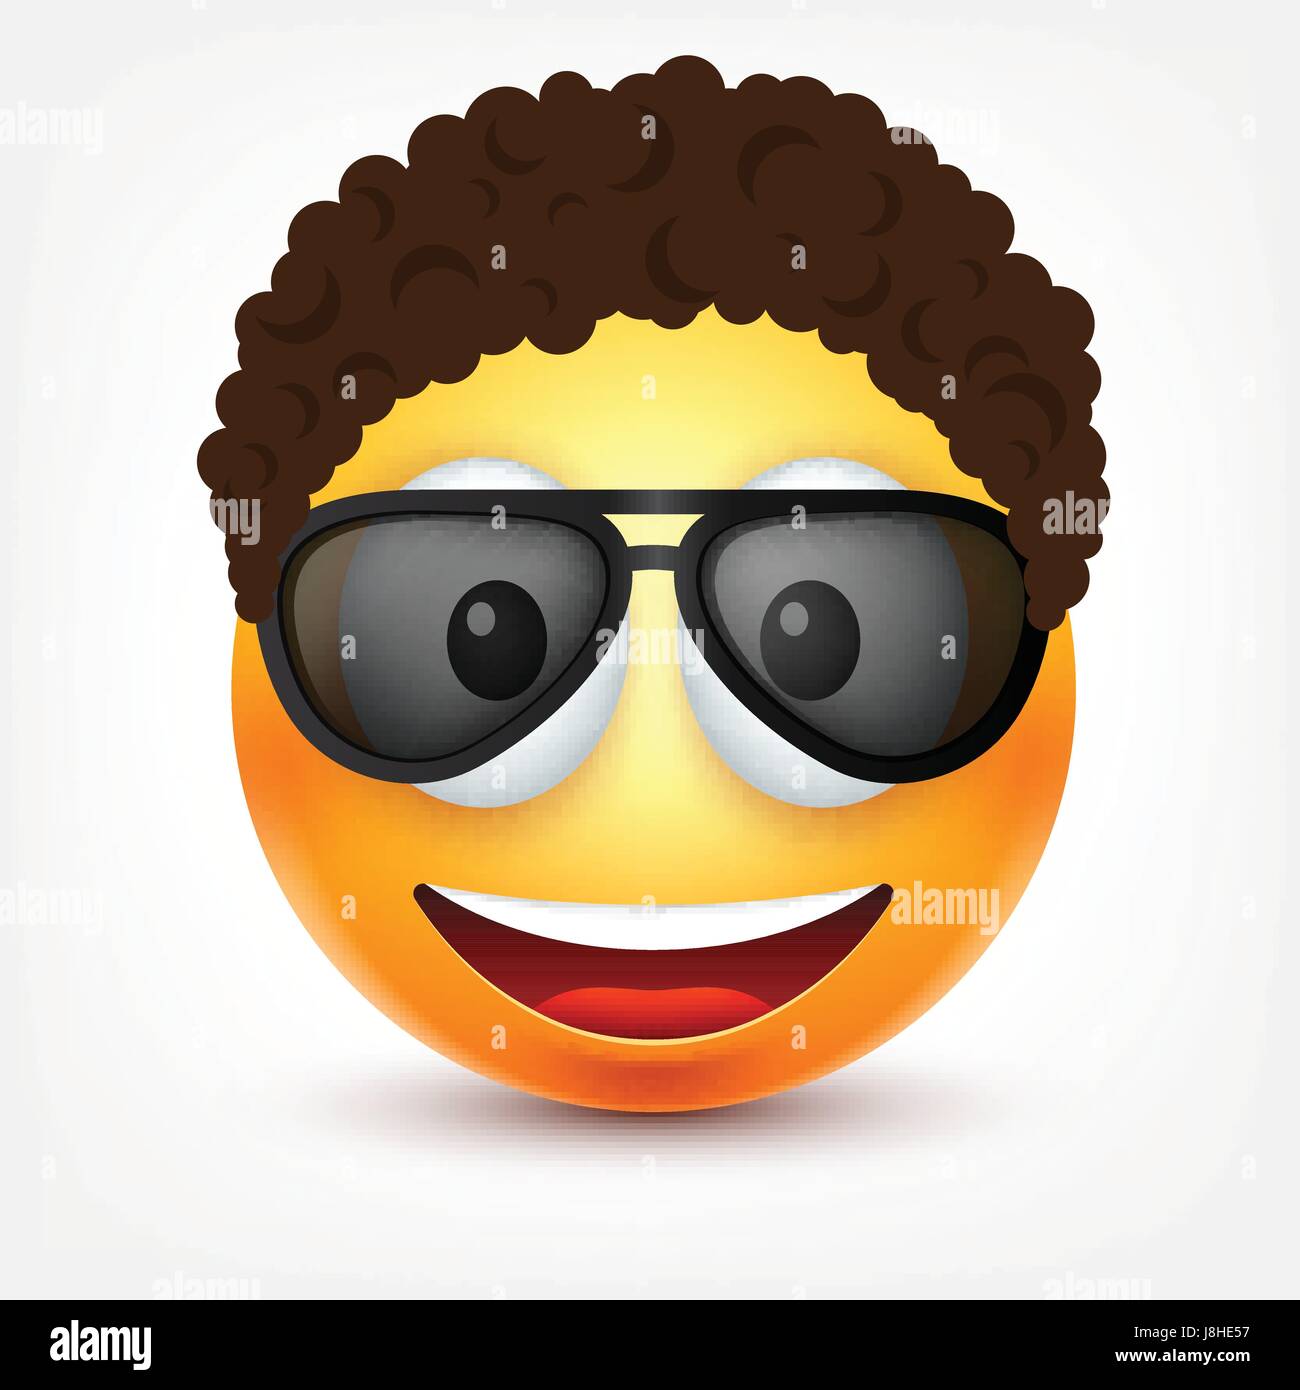 Smiley mit Brille und Haare, Lächeln, glücklich Emoticons. Gelbes Gesicht  mit Emotionen. Gesichtsausdruck. 3D realistisch Emoji. Lustige Comic-Figur.  Stimmung. Web-Symbol. Vektor-Illustration Stock-Vektorgrafik - Alamy